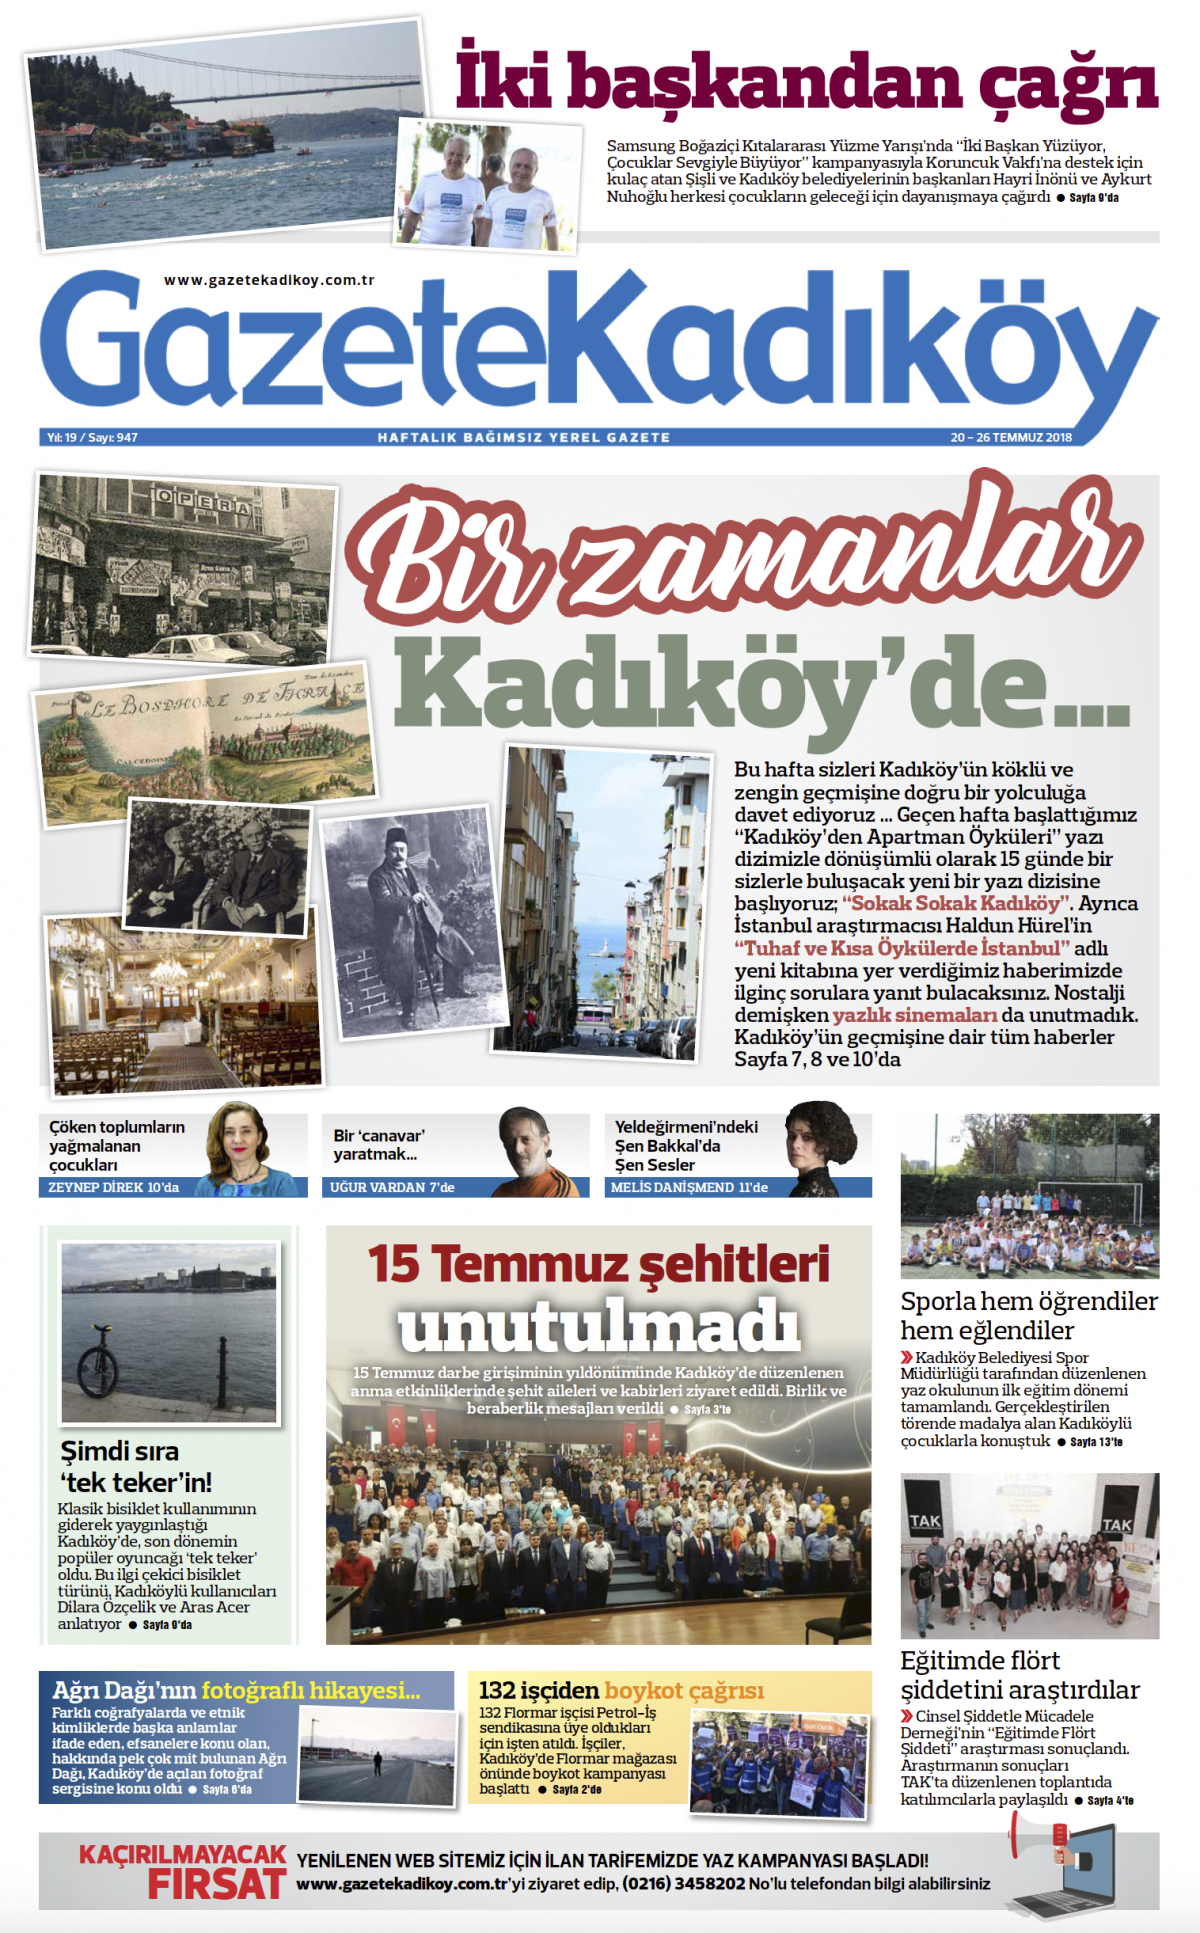 Gazete Kadıköy - 947. SAYI